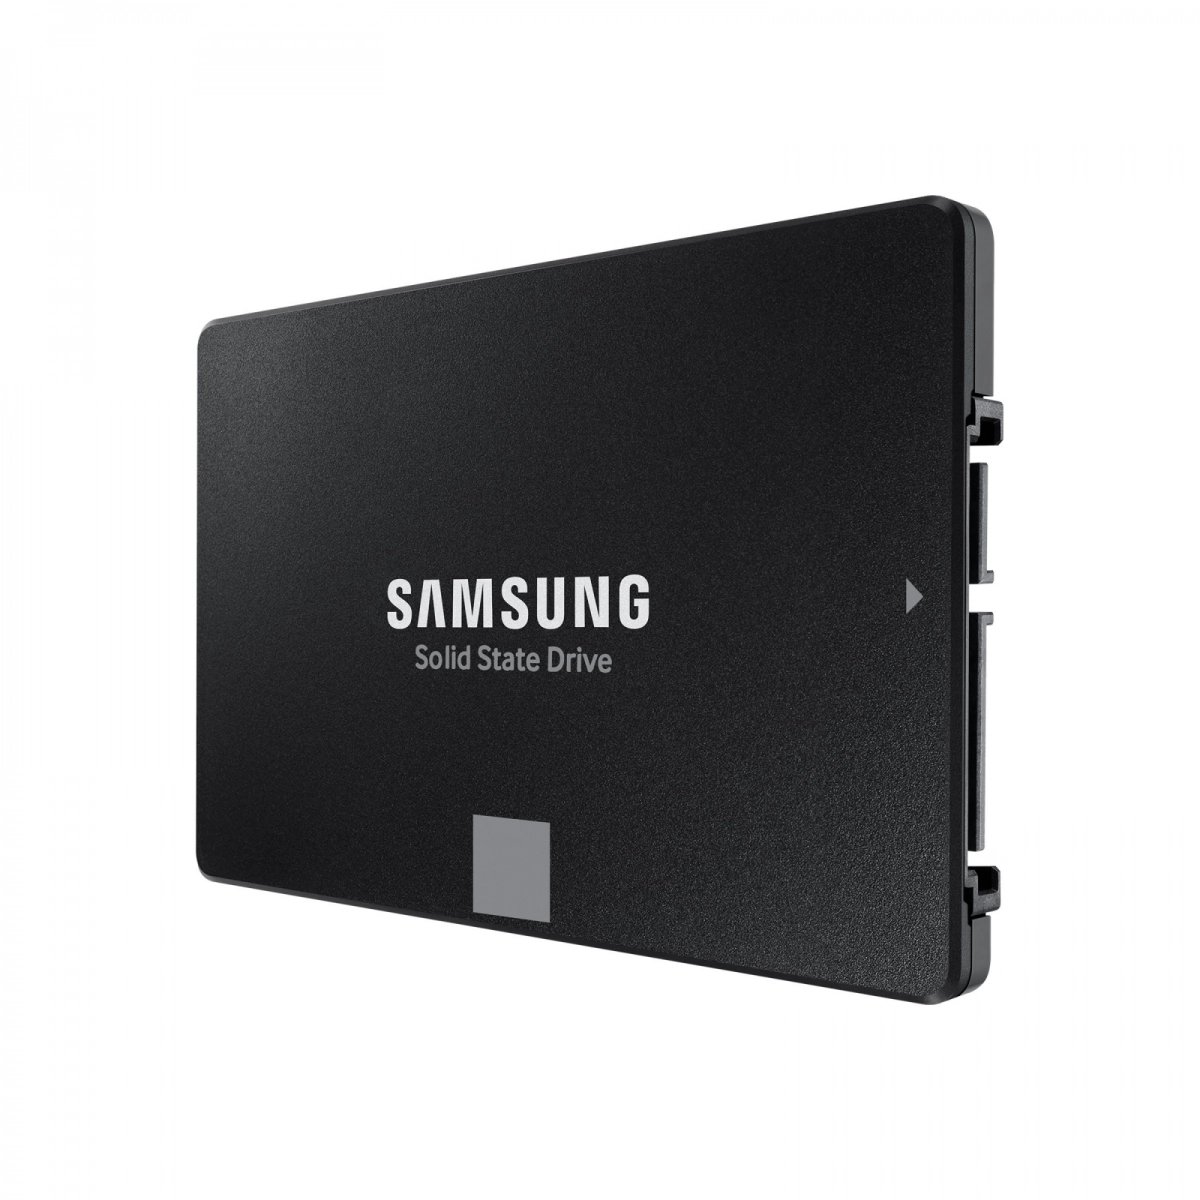 Notebook-Festplatte 500GB, SSD SATA3 MLC für DELL Latitude E6420